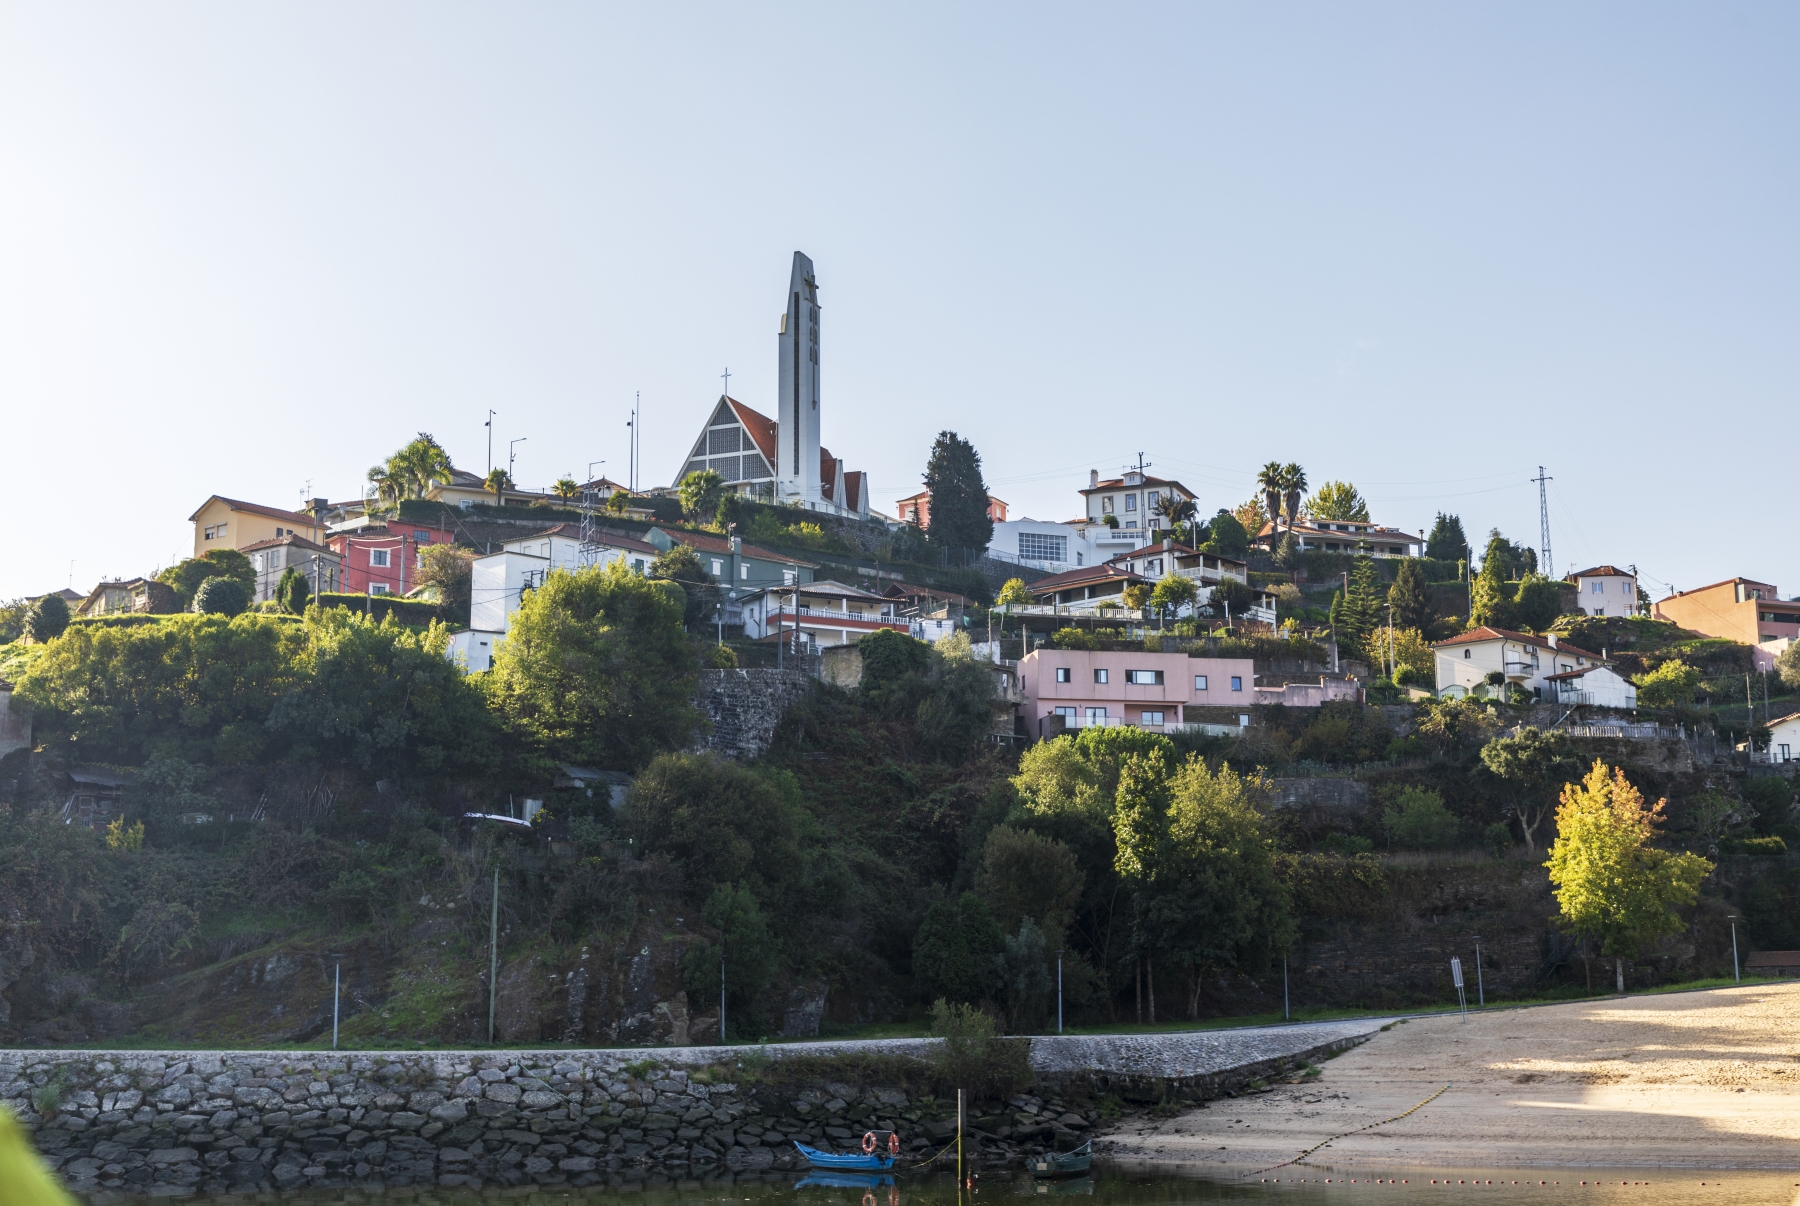 Douro River Cruise Portugal 2023